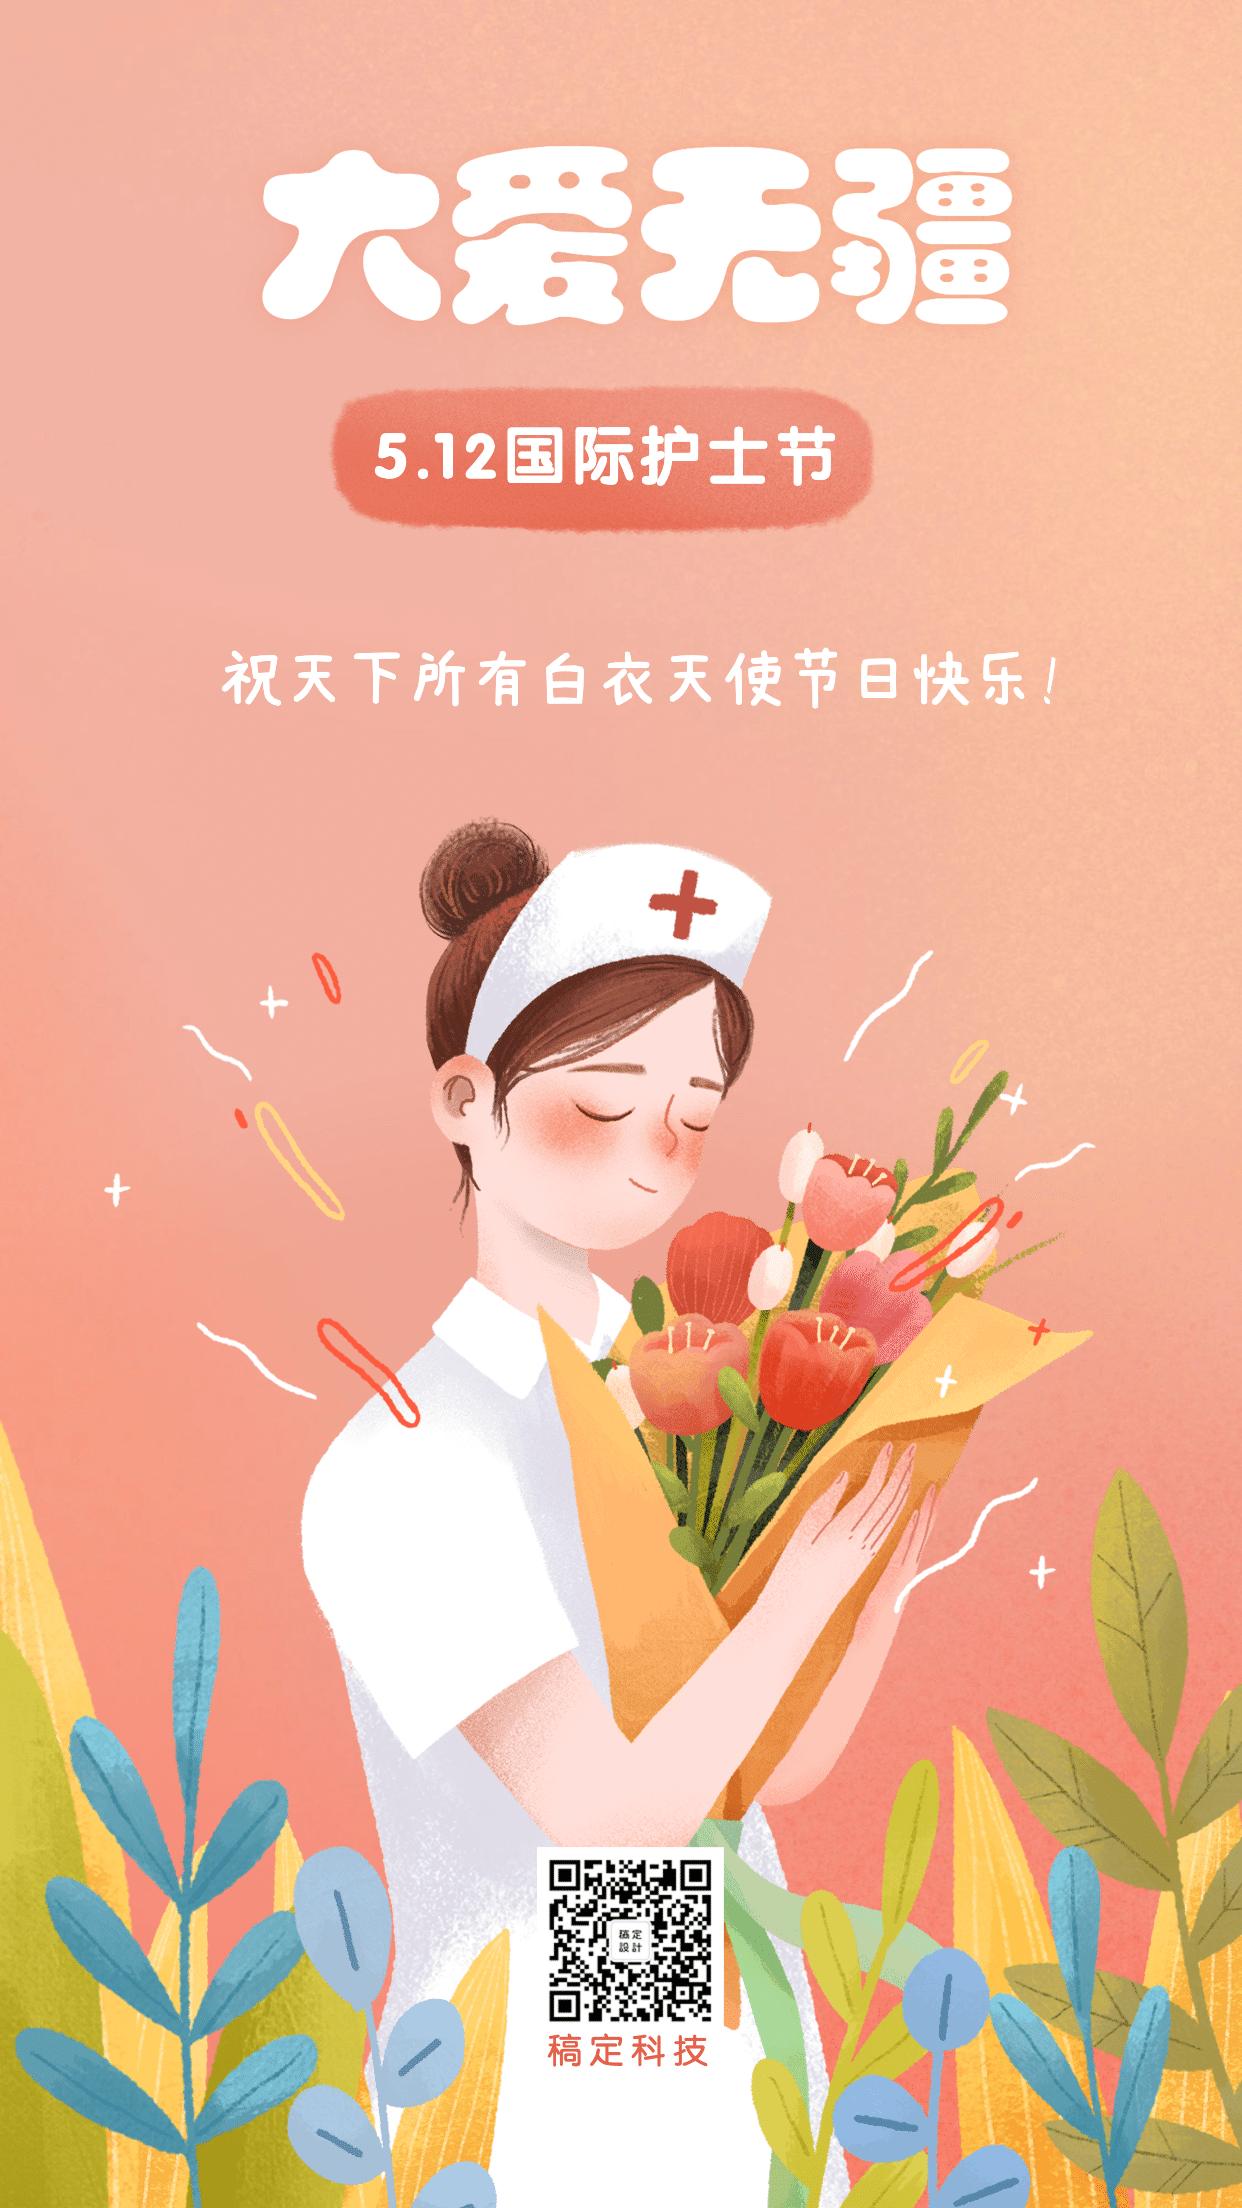 国际护士节祝福问候插画手机海报